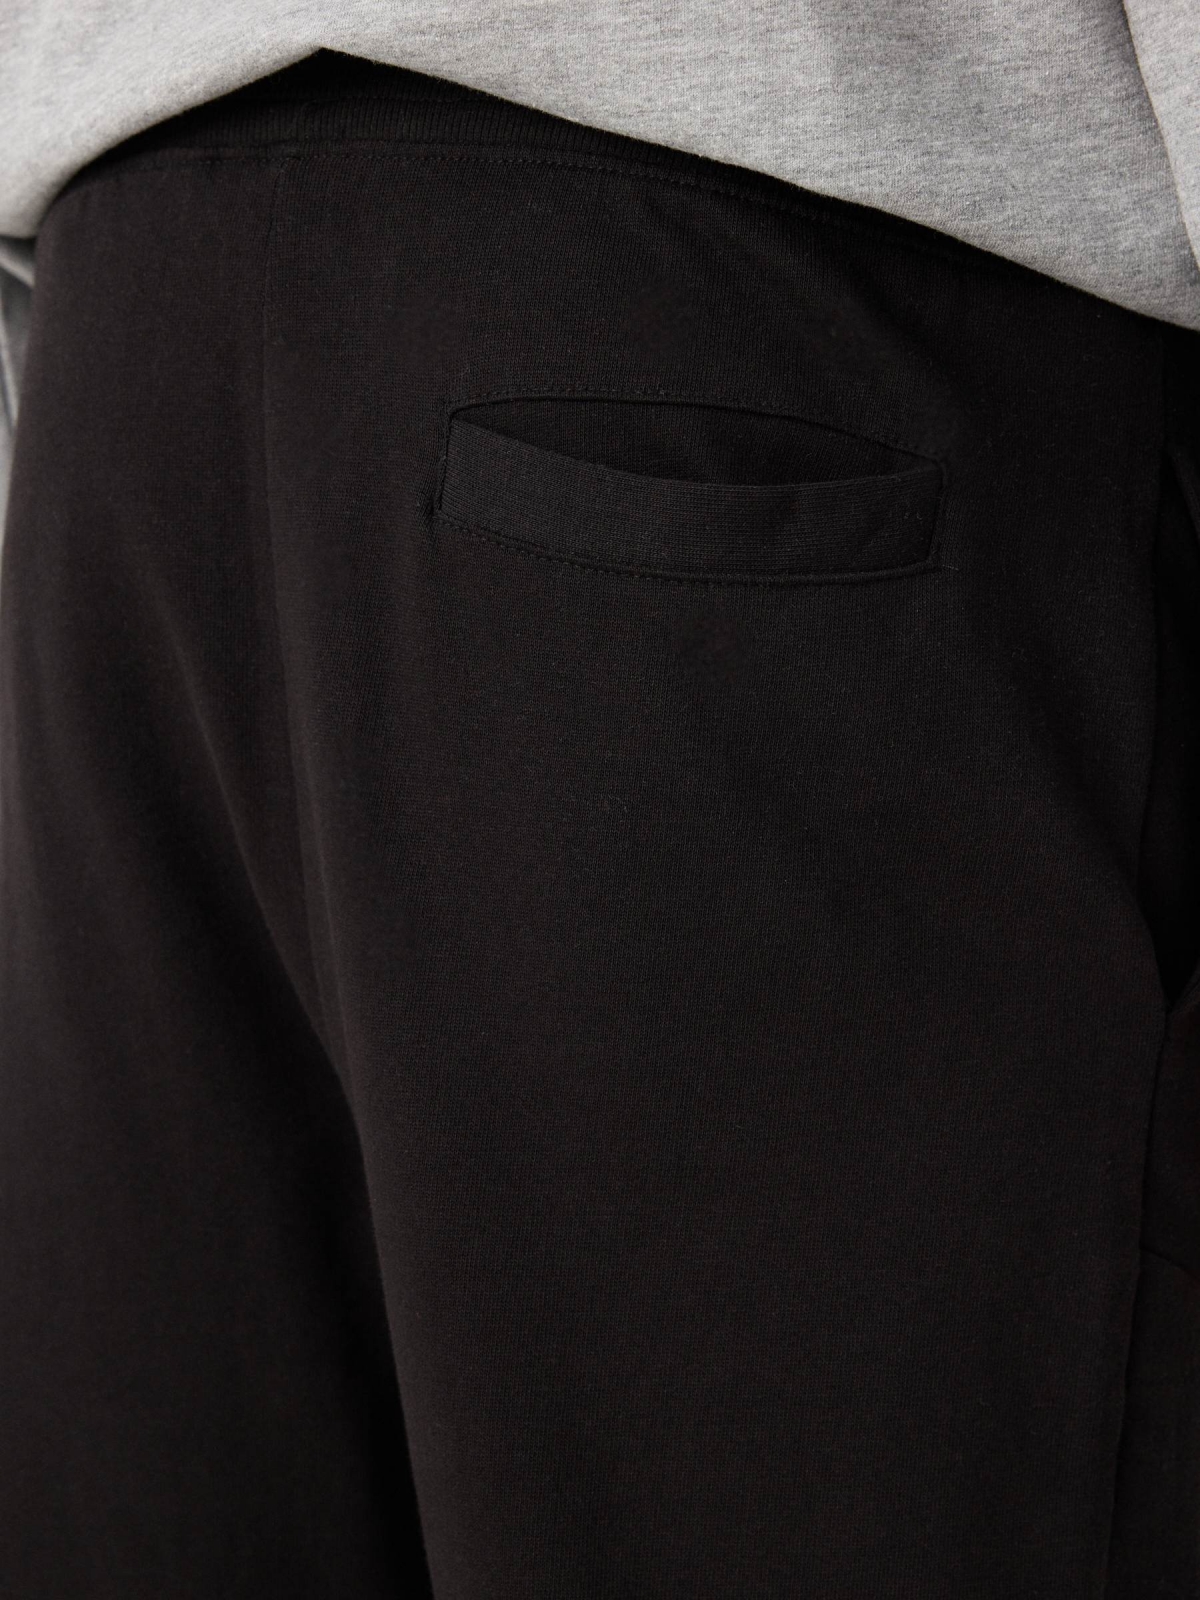 Pantanlón jogger negro vista detalle